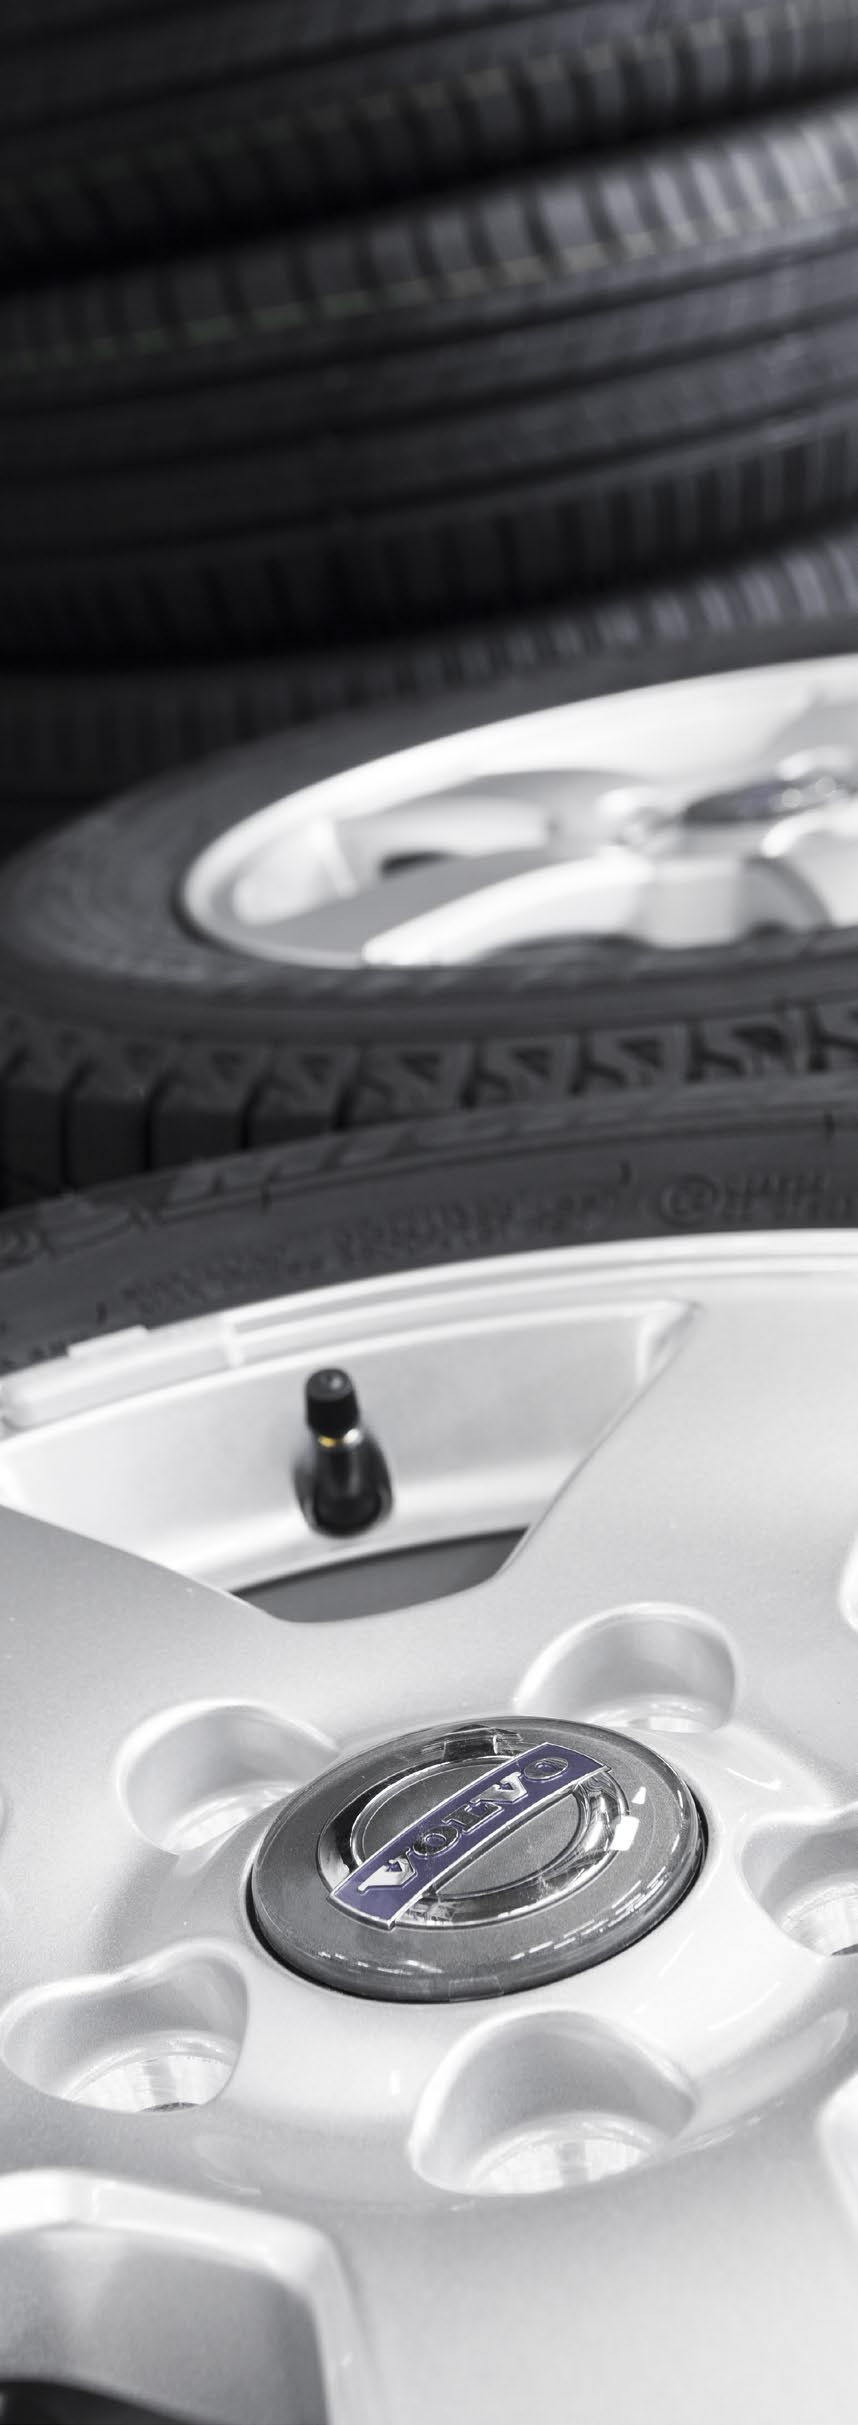 základní informace o pneumatikách PROČ JSOU PNMATIKY TAK DŮLEŽITÉ Je to prosté, představují jediné kontaktní body mezi vozidlem a silnicí.